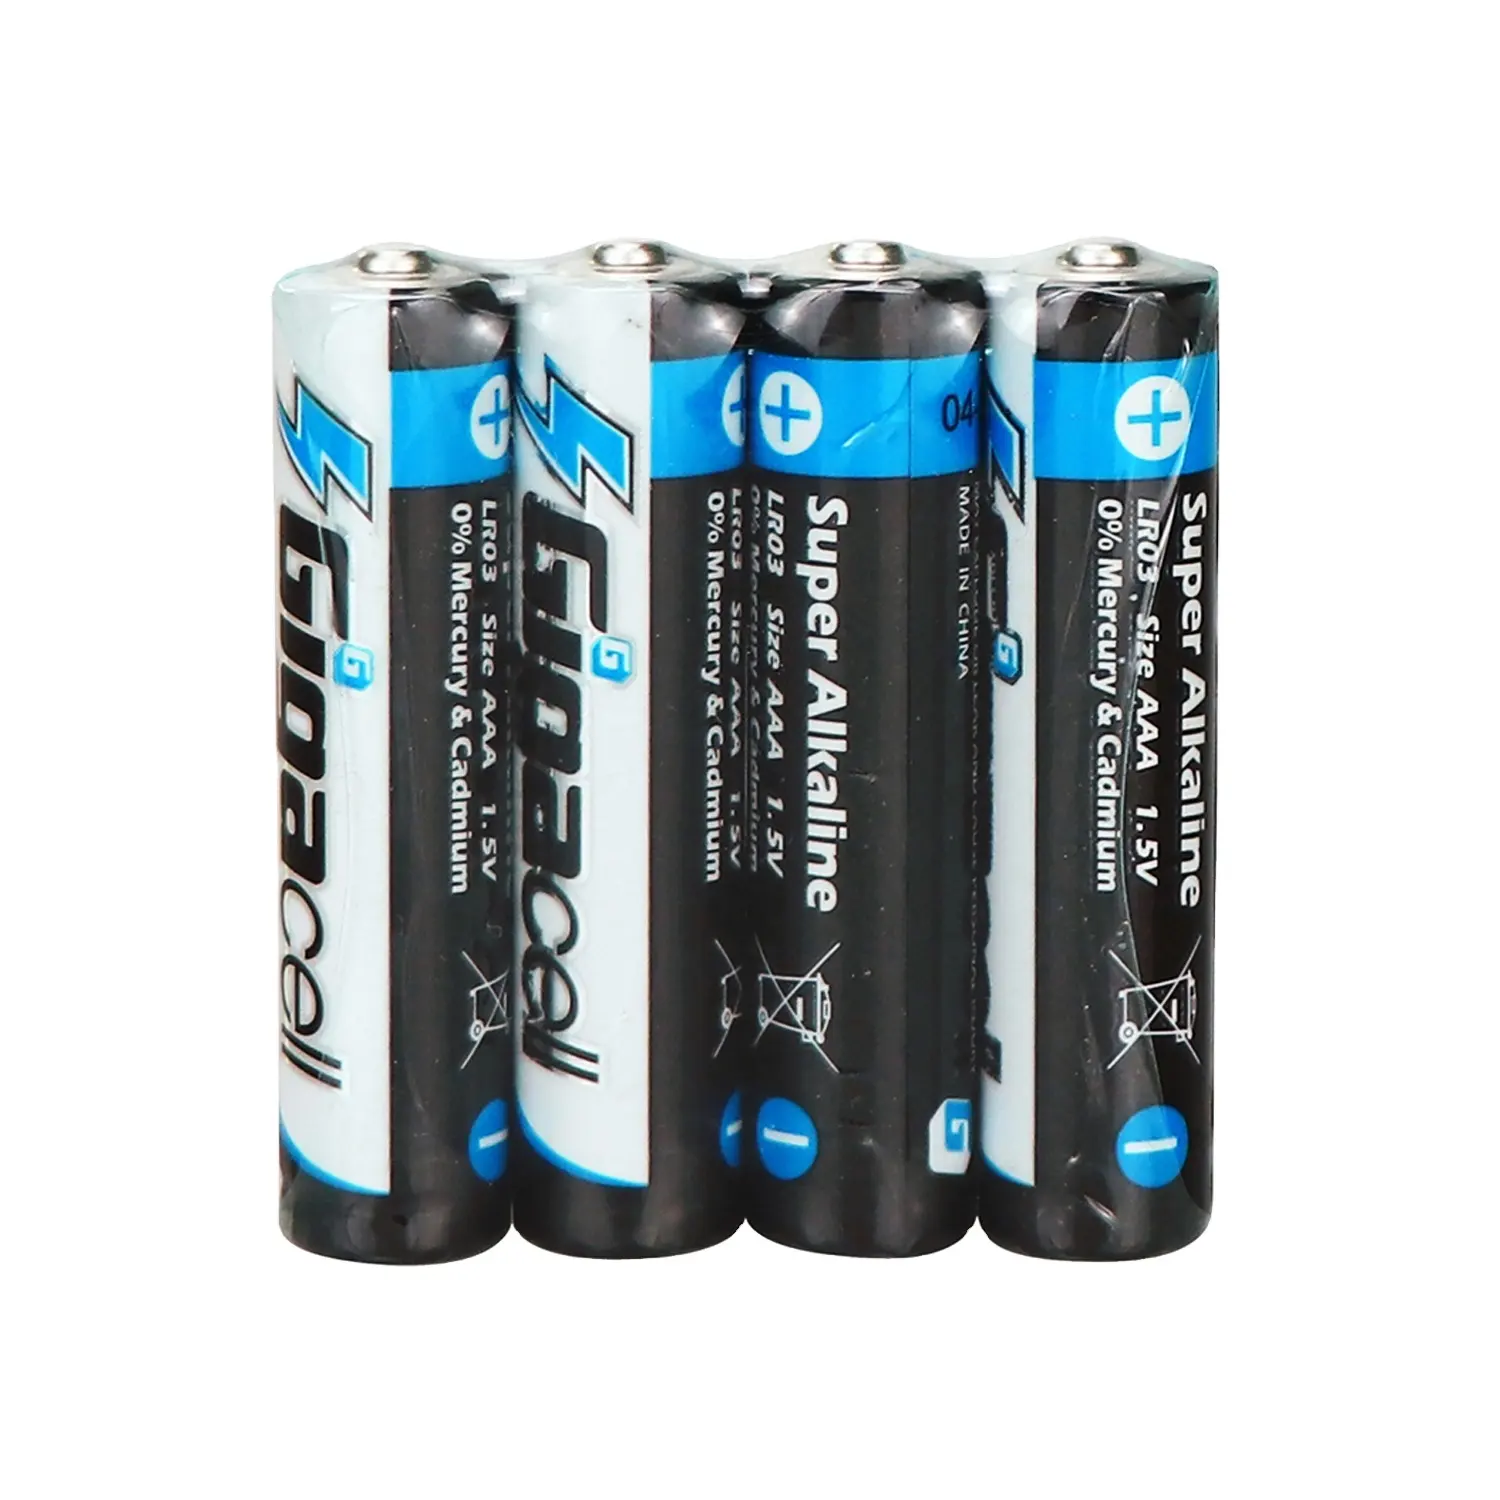 AM4 alkaline battery LR03 battery size AAA alkaline battery